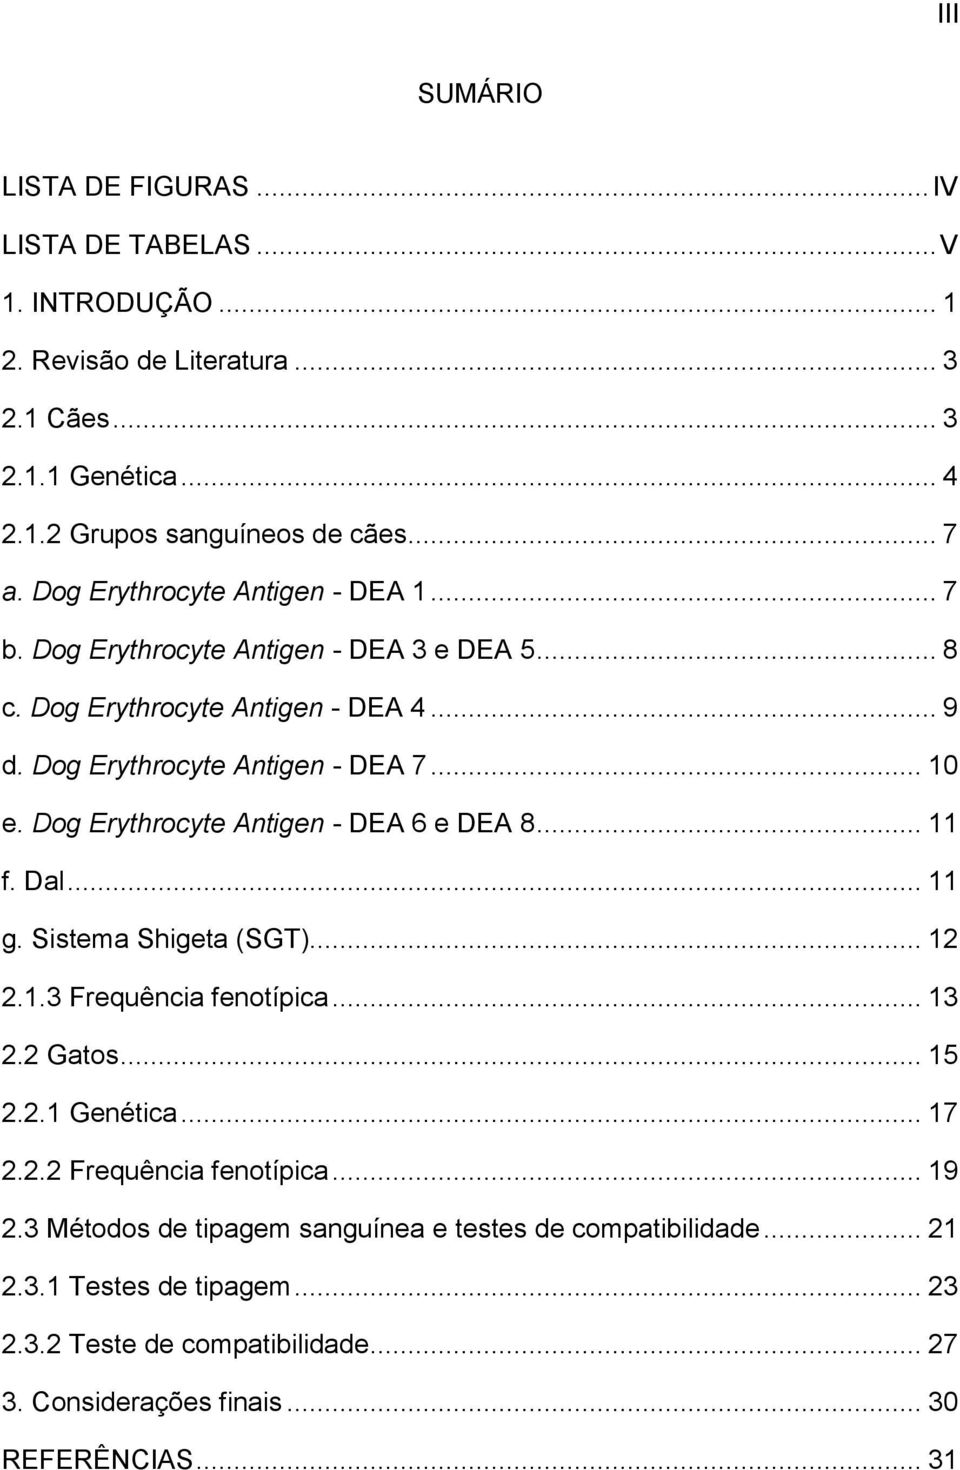 Dog Erythrocyte Antigen - DEA 6 e DEA 8... 11 f. Dal... 11 g. Sistema Shigeta (SGT)... 12 2.1.3 Frequência fenotípica... 13 2.2 Gatos... 15 2.2.1 Genética... 17 2.2.2 Frequência fenotípica.